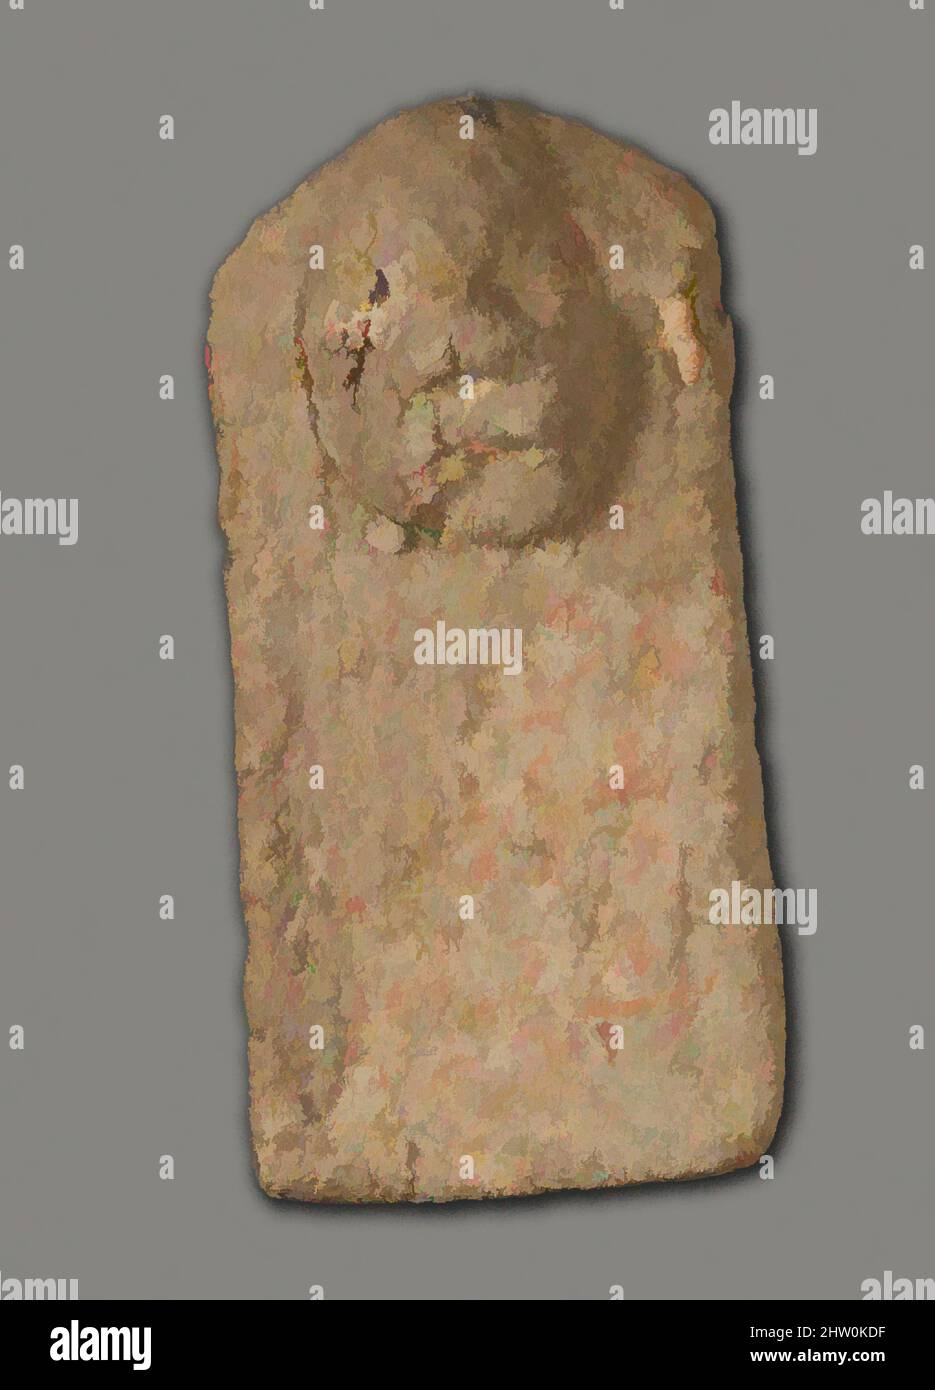 Art inspiré par la figure magique, fin du Royaume moyen–deuxième période intermédiaire, dynastie 13–SIP, env. 1802–1550 av. J.-C., d'Égypte, région Memphite, Lisht Sud, à l'ouest de la mastaba de Senwosretankh, dépôt de surface, 1932–33, Clay (non tiré), H. 7,6 cm (3 po.); W. 3,6 cm (1 7/16 po., œuvres classiques modernisées par Artotop avec une touche de modernité. Formes, couleur et valeur, impact visuel accrocheur sur l'art émotions par la liberté d'œuvres d'art d'une manière contemporaine. Un message intemporel qui cherche une nouvelle direction créative. Artistes qui se tournent vers le support numérique et créent le NFT Artotop Banque D'Images